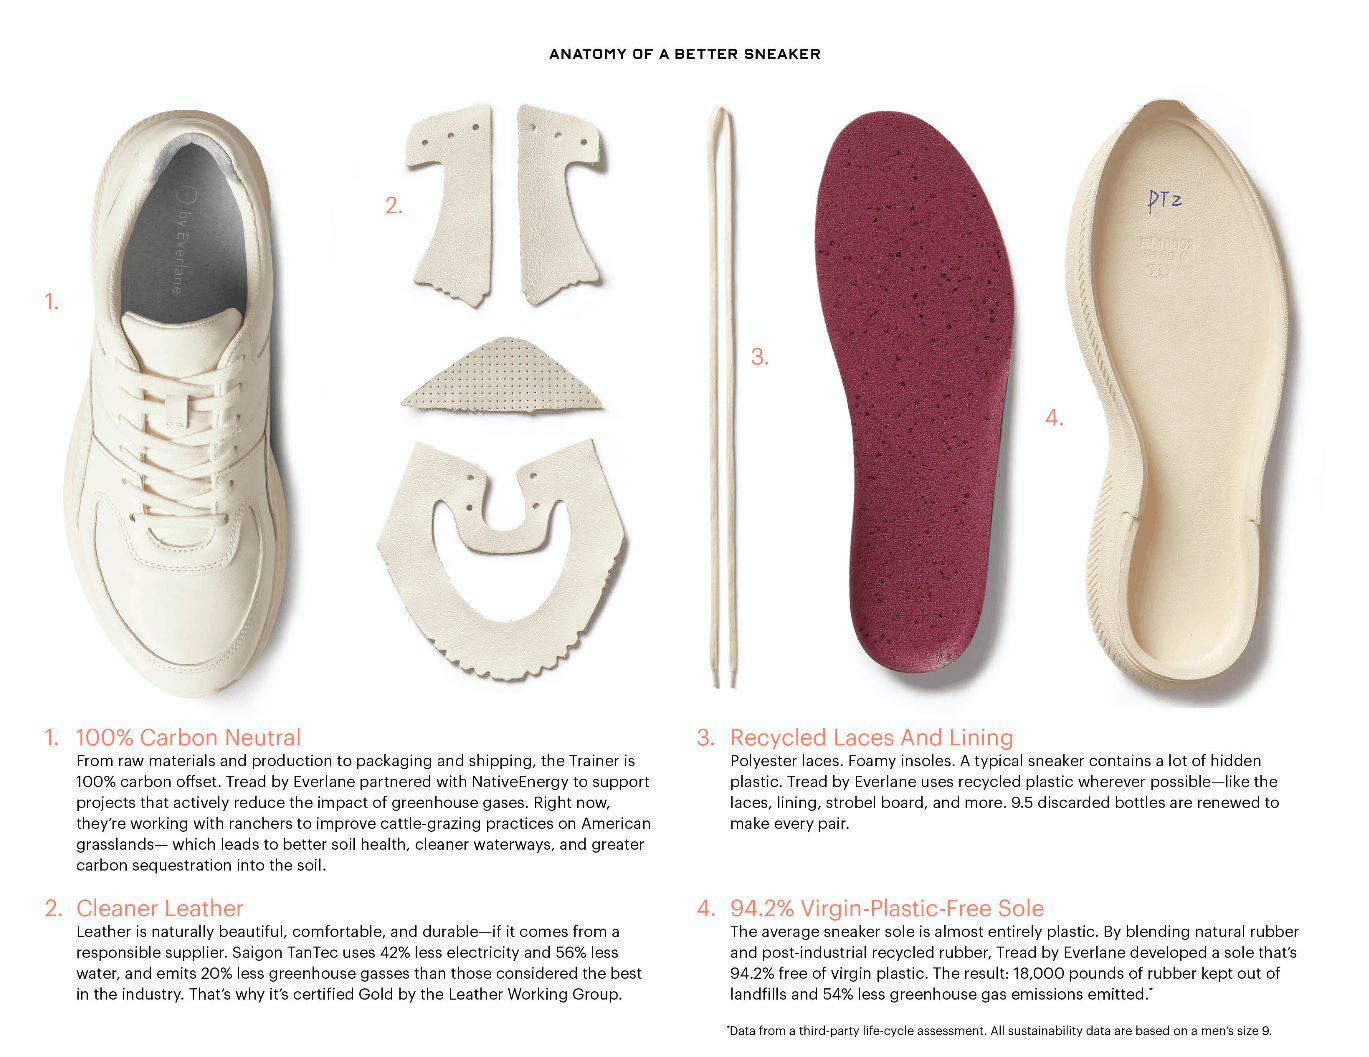 Everlane tạo ra hệ thống thông minh, trong đó khách hàng có thể gửi lại những mẫu sneakers không dùng để thương hiệu xử lý thay vì vứt đi.